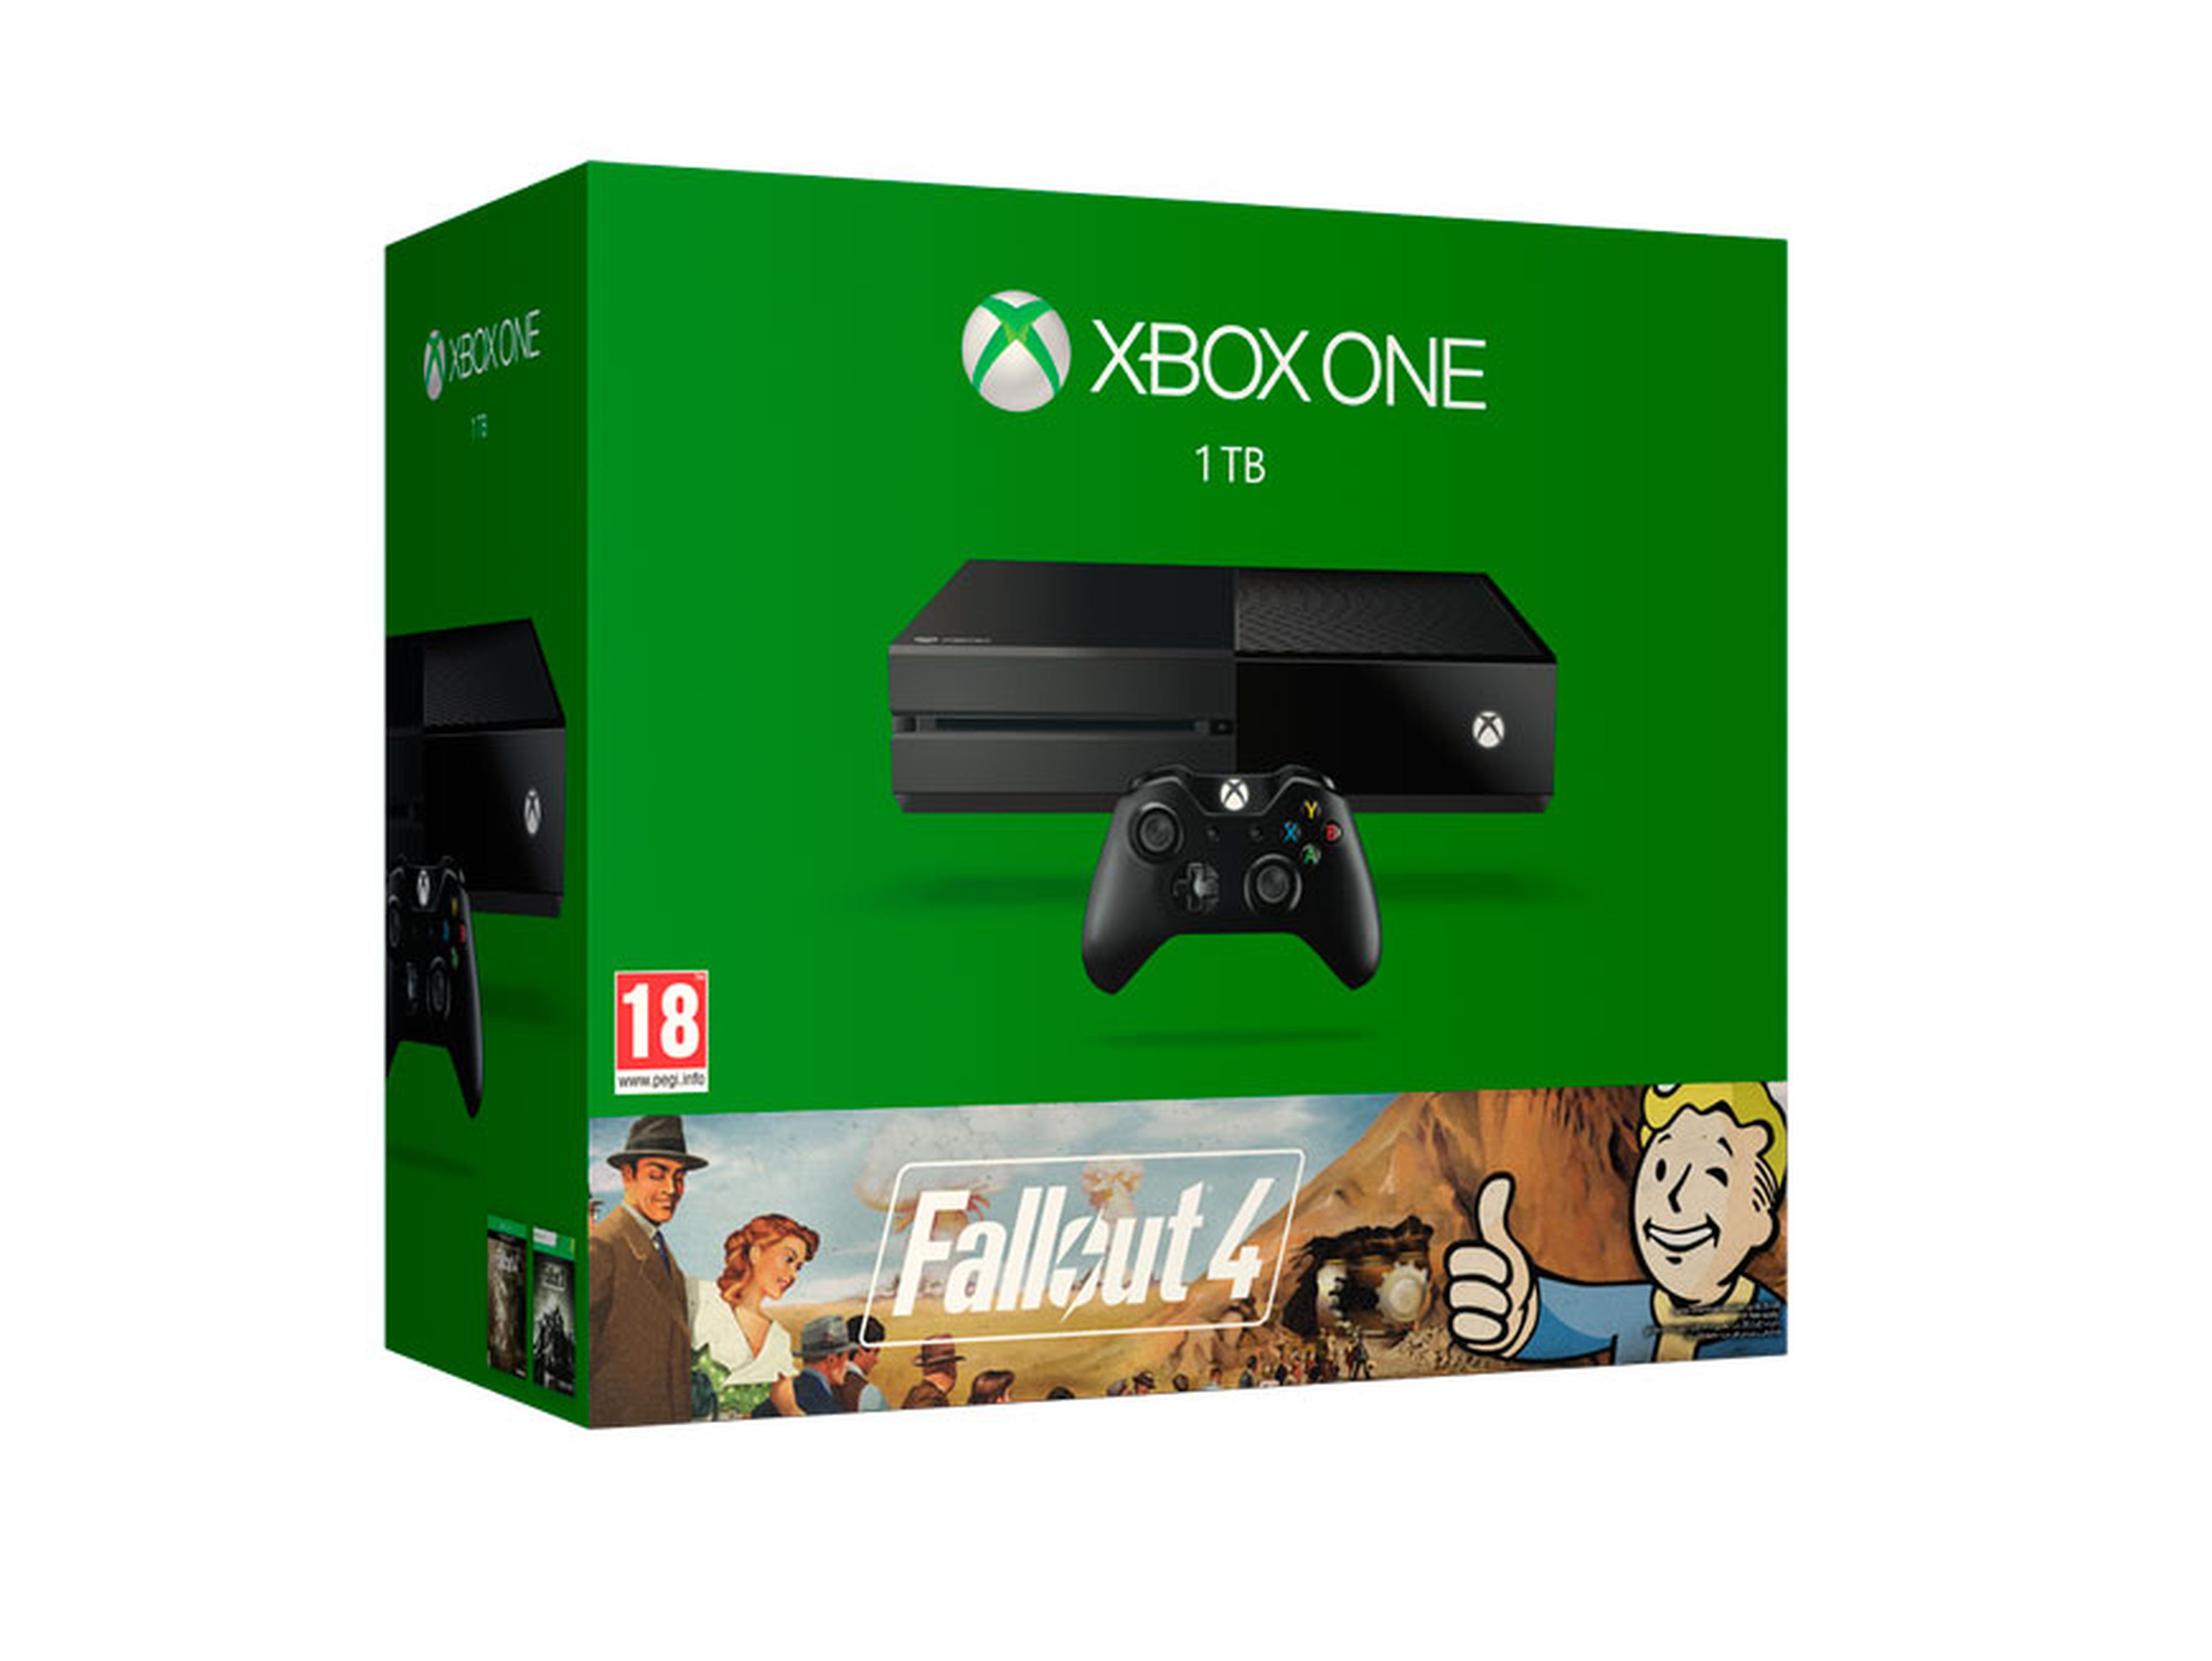 Pack de Xbox One de 1TB + Fallout 4